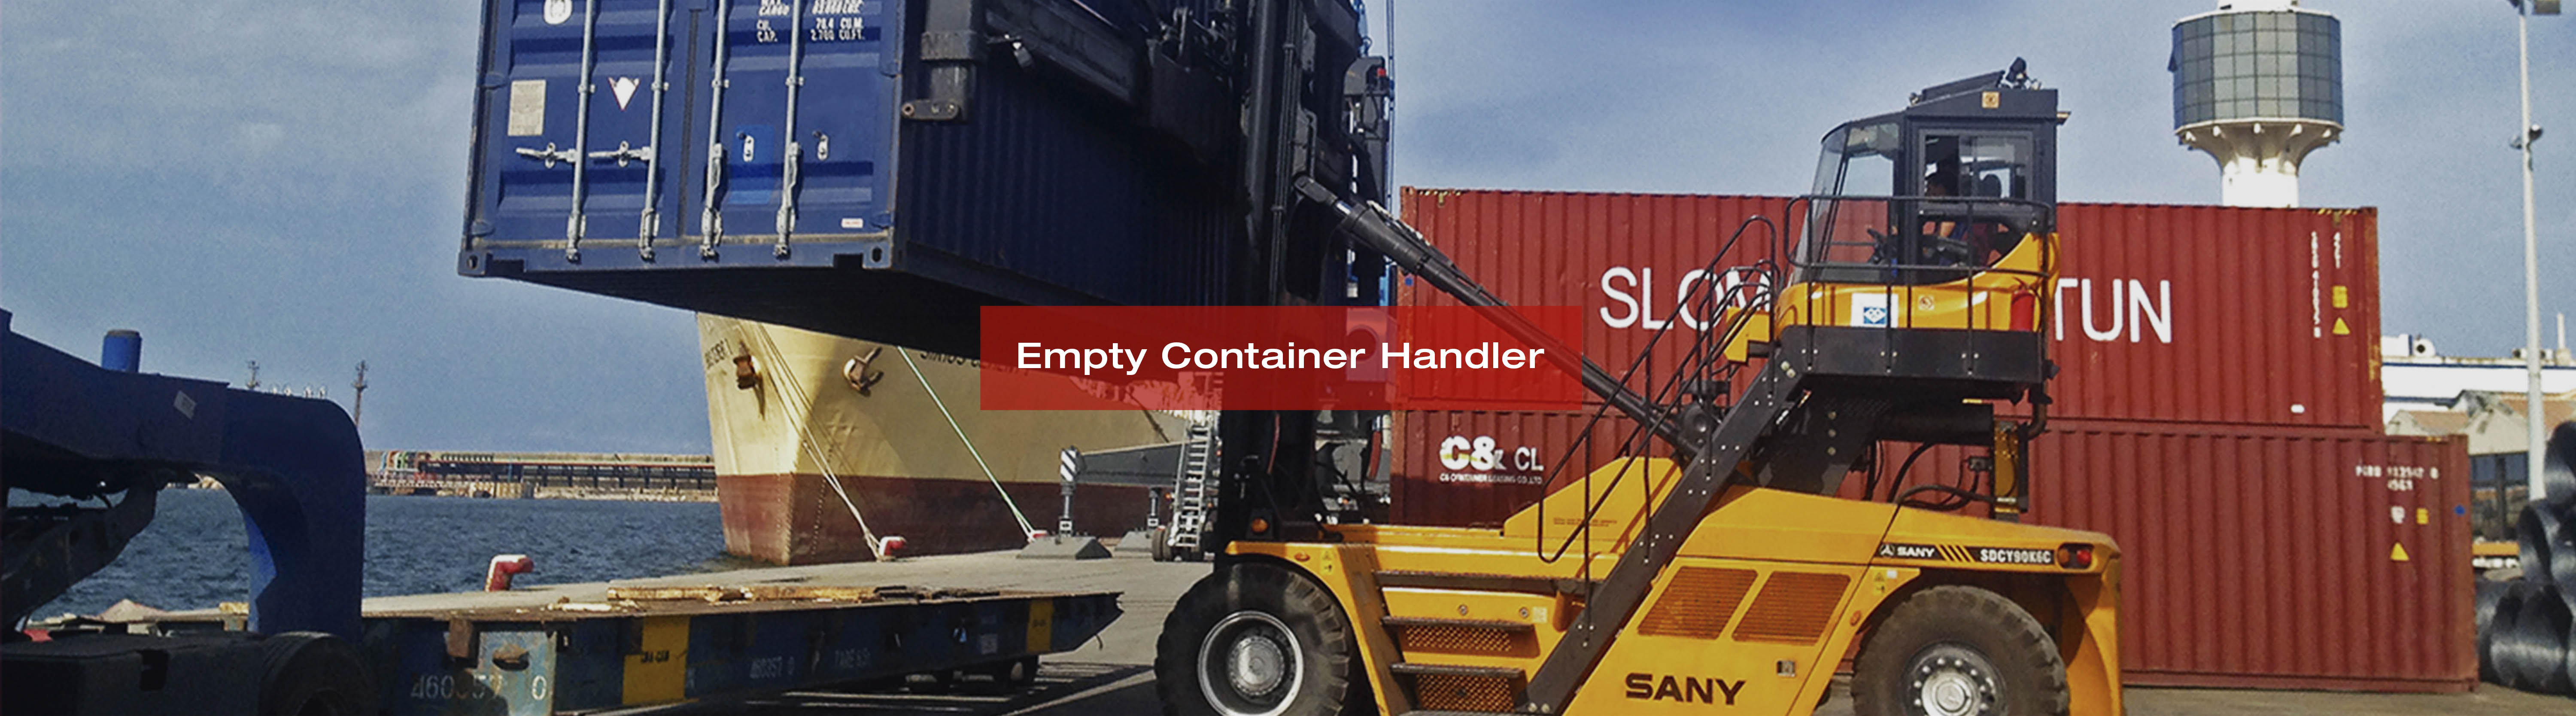 Banner de Empy Container Handler